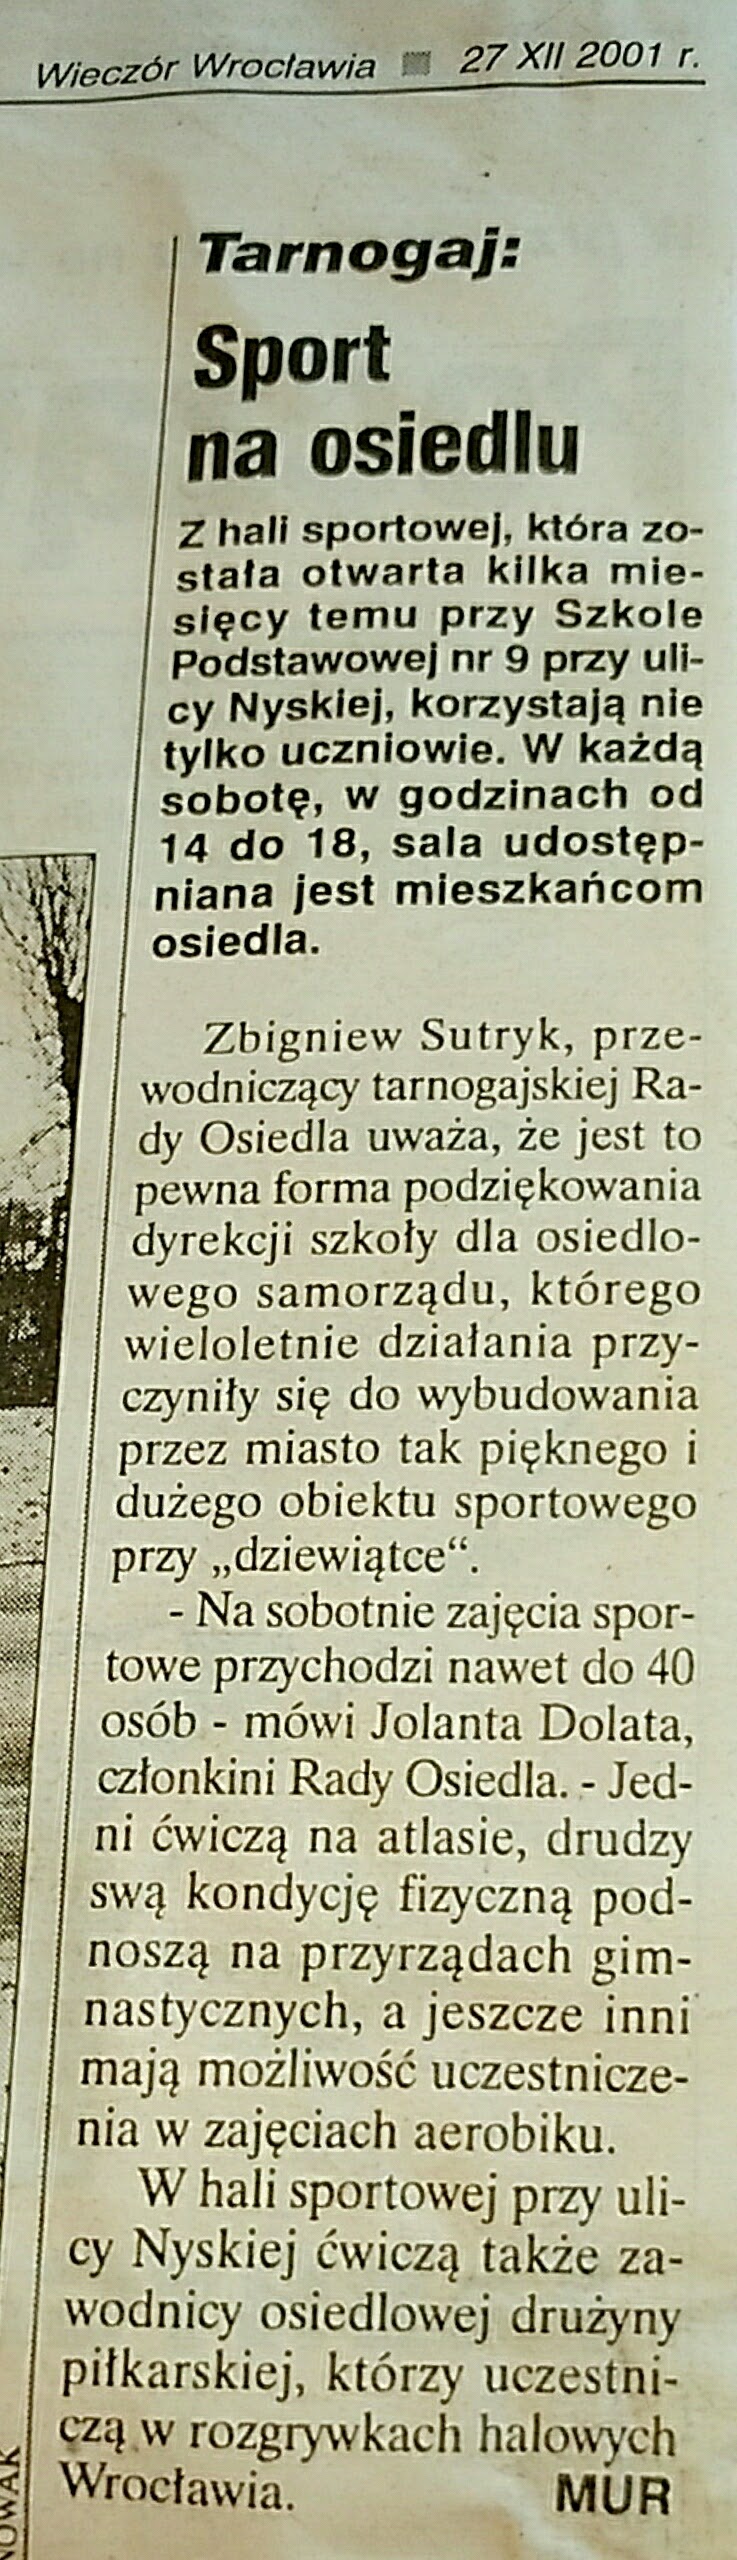 25 27 Grudnia 2001 Wieczór Wrocławski